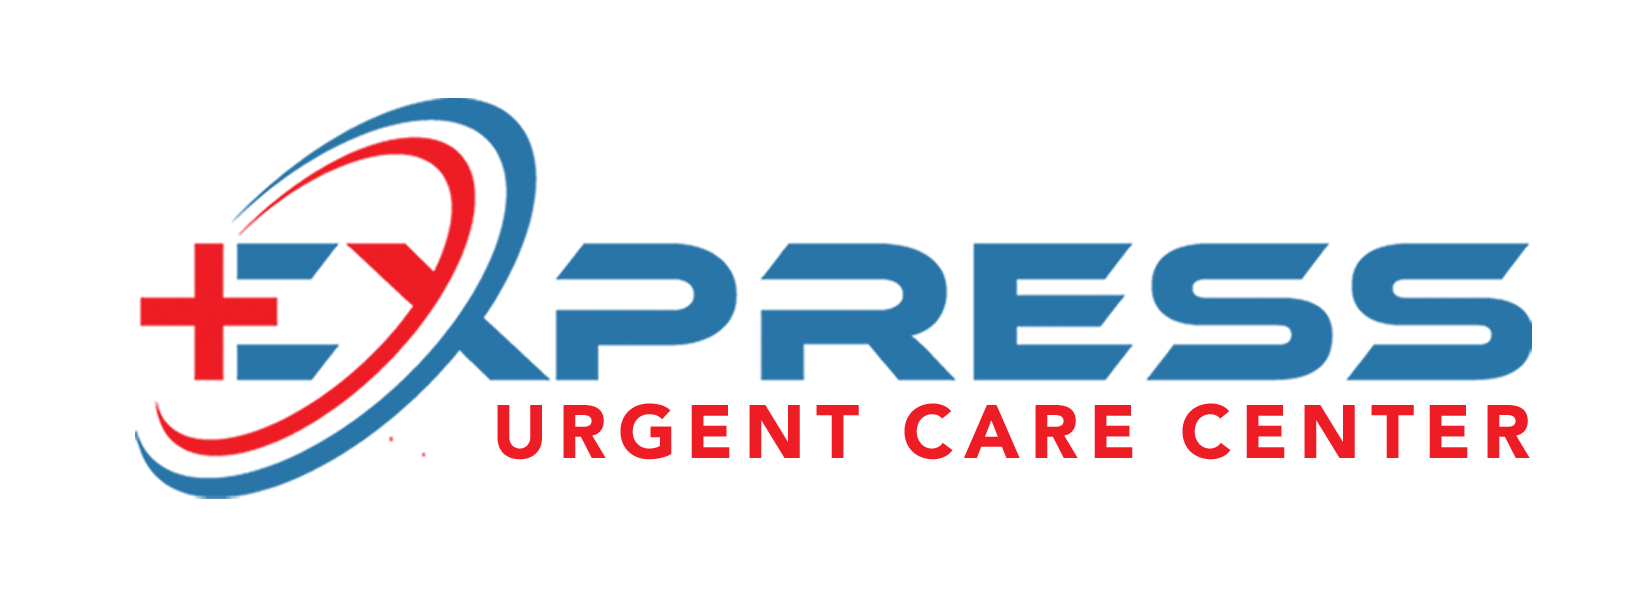 EXP Urgent Care logo